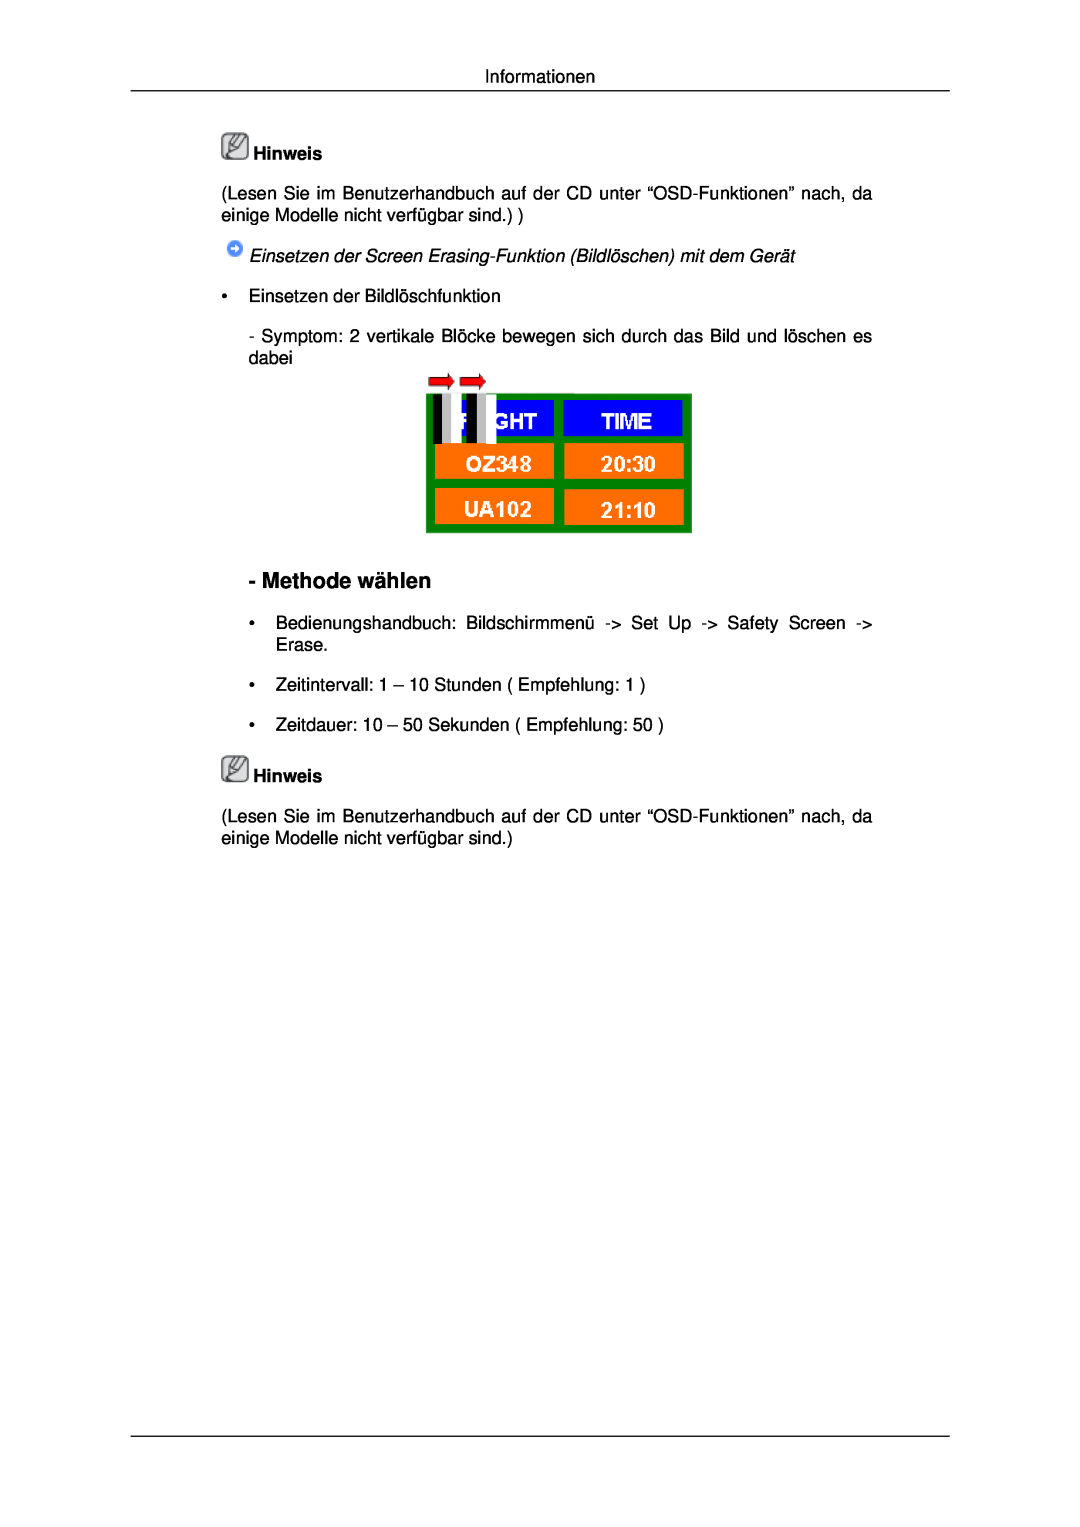 Samsung LH46MSTABB/EN manual Einsetzen der Screen Erasing-Funktion Bildlöschen mit dem Gerät, Methode wählen, Hinweis 